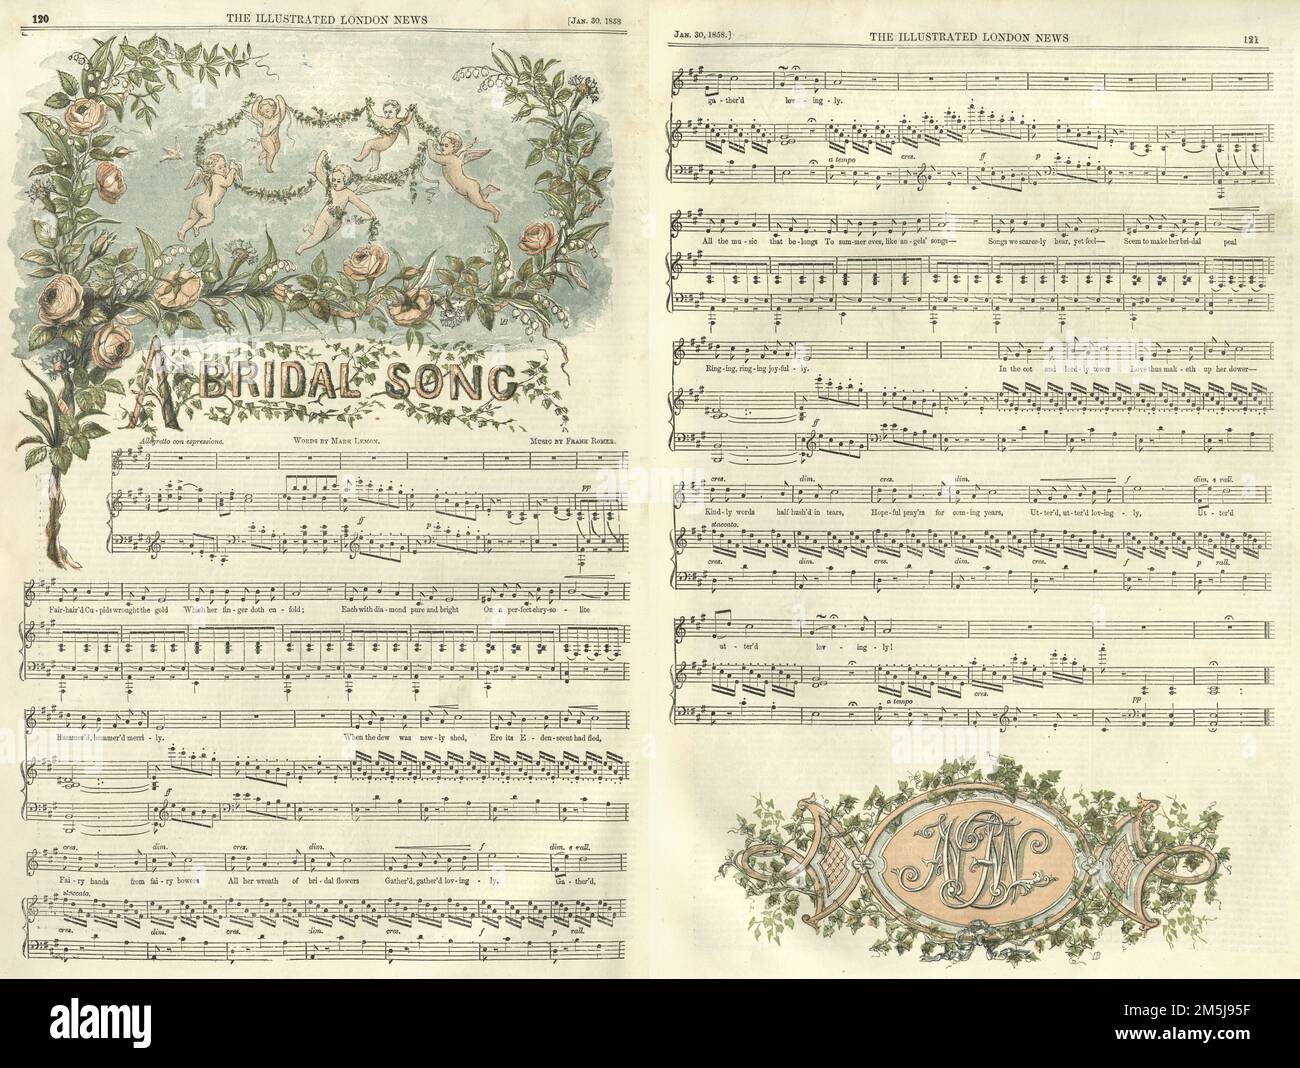 Chant de mariée pour le mariage de Victoria Princess Royal, 1858 Banque D'Images